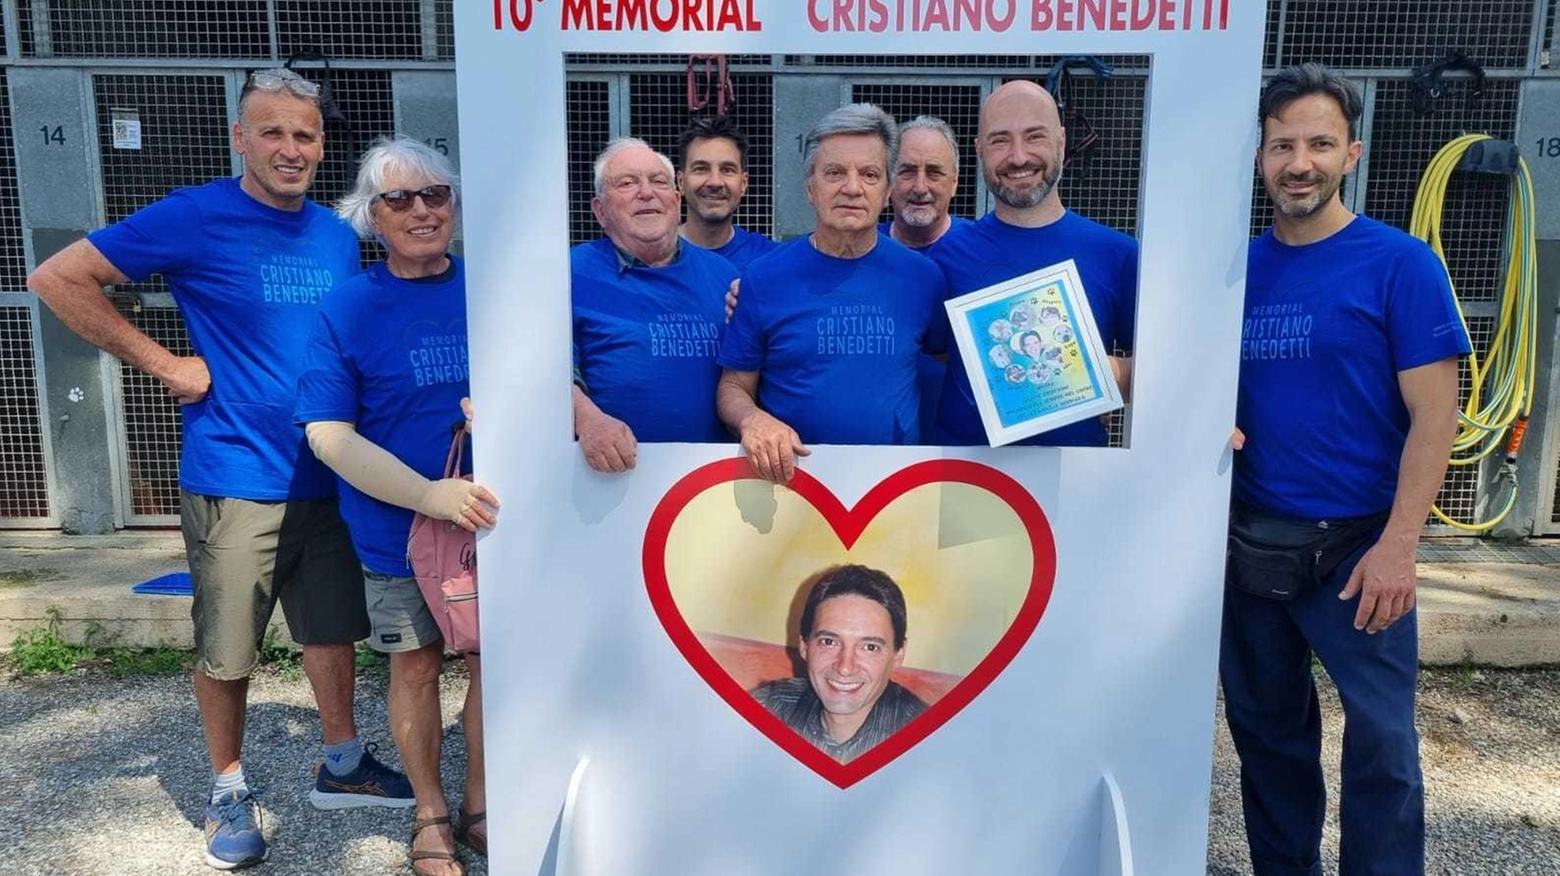 Memorial Cristiano Benedetti. Donazioni per 11mila euro